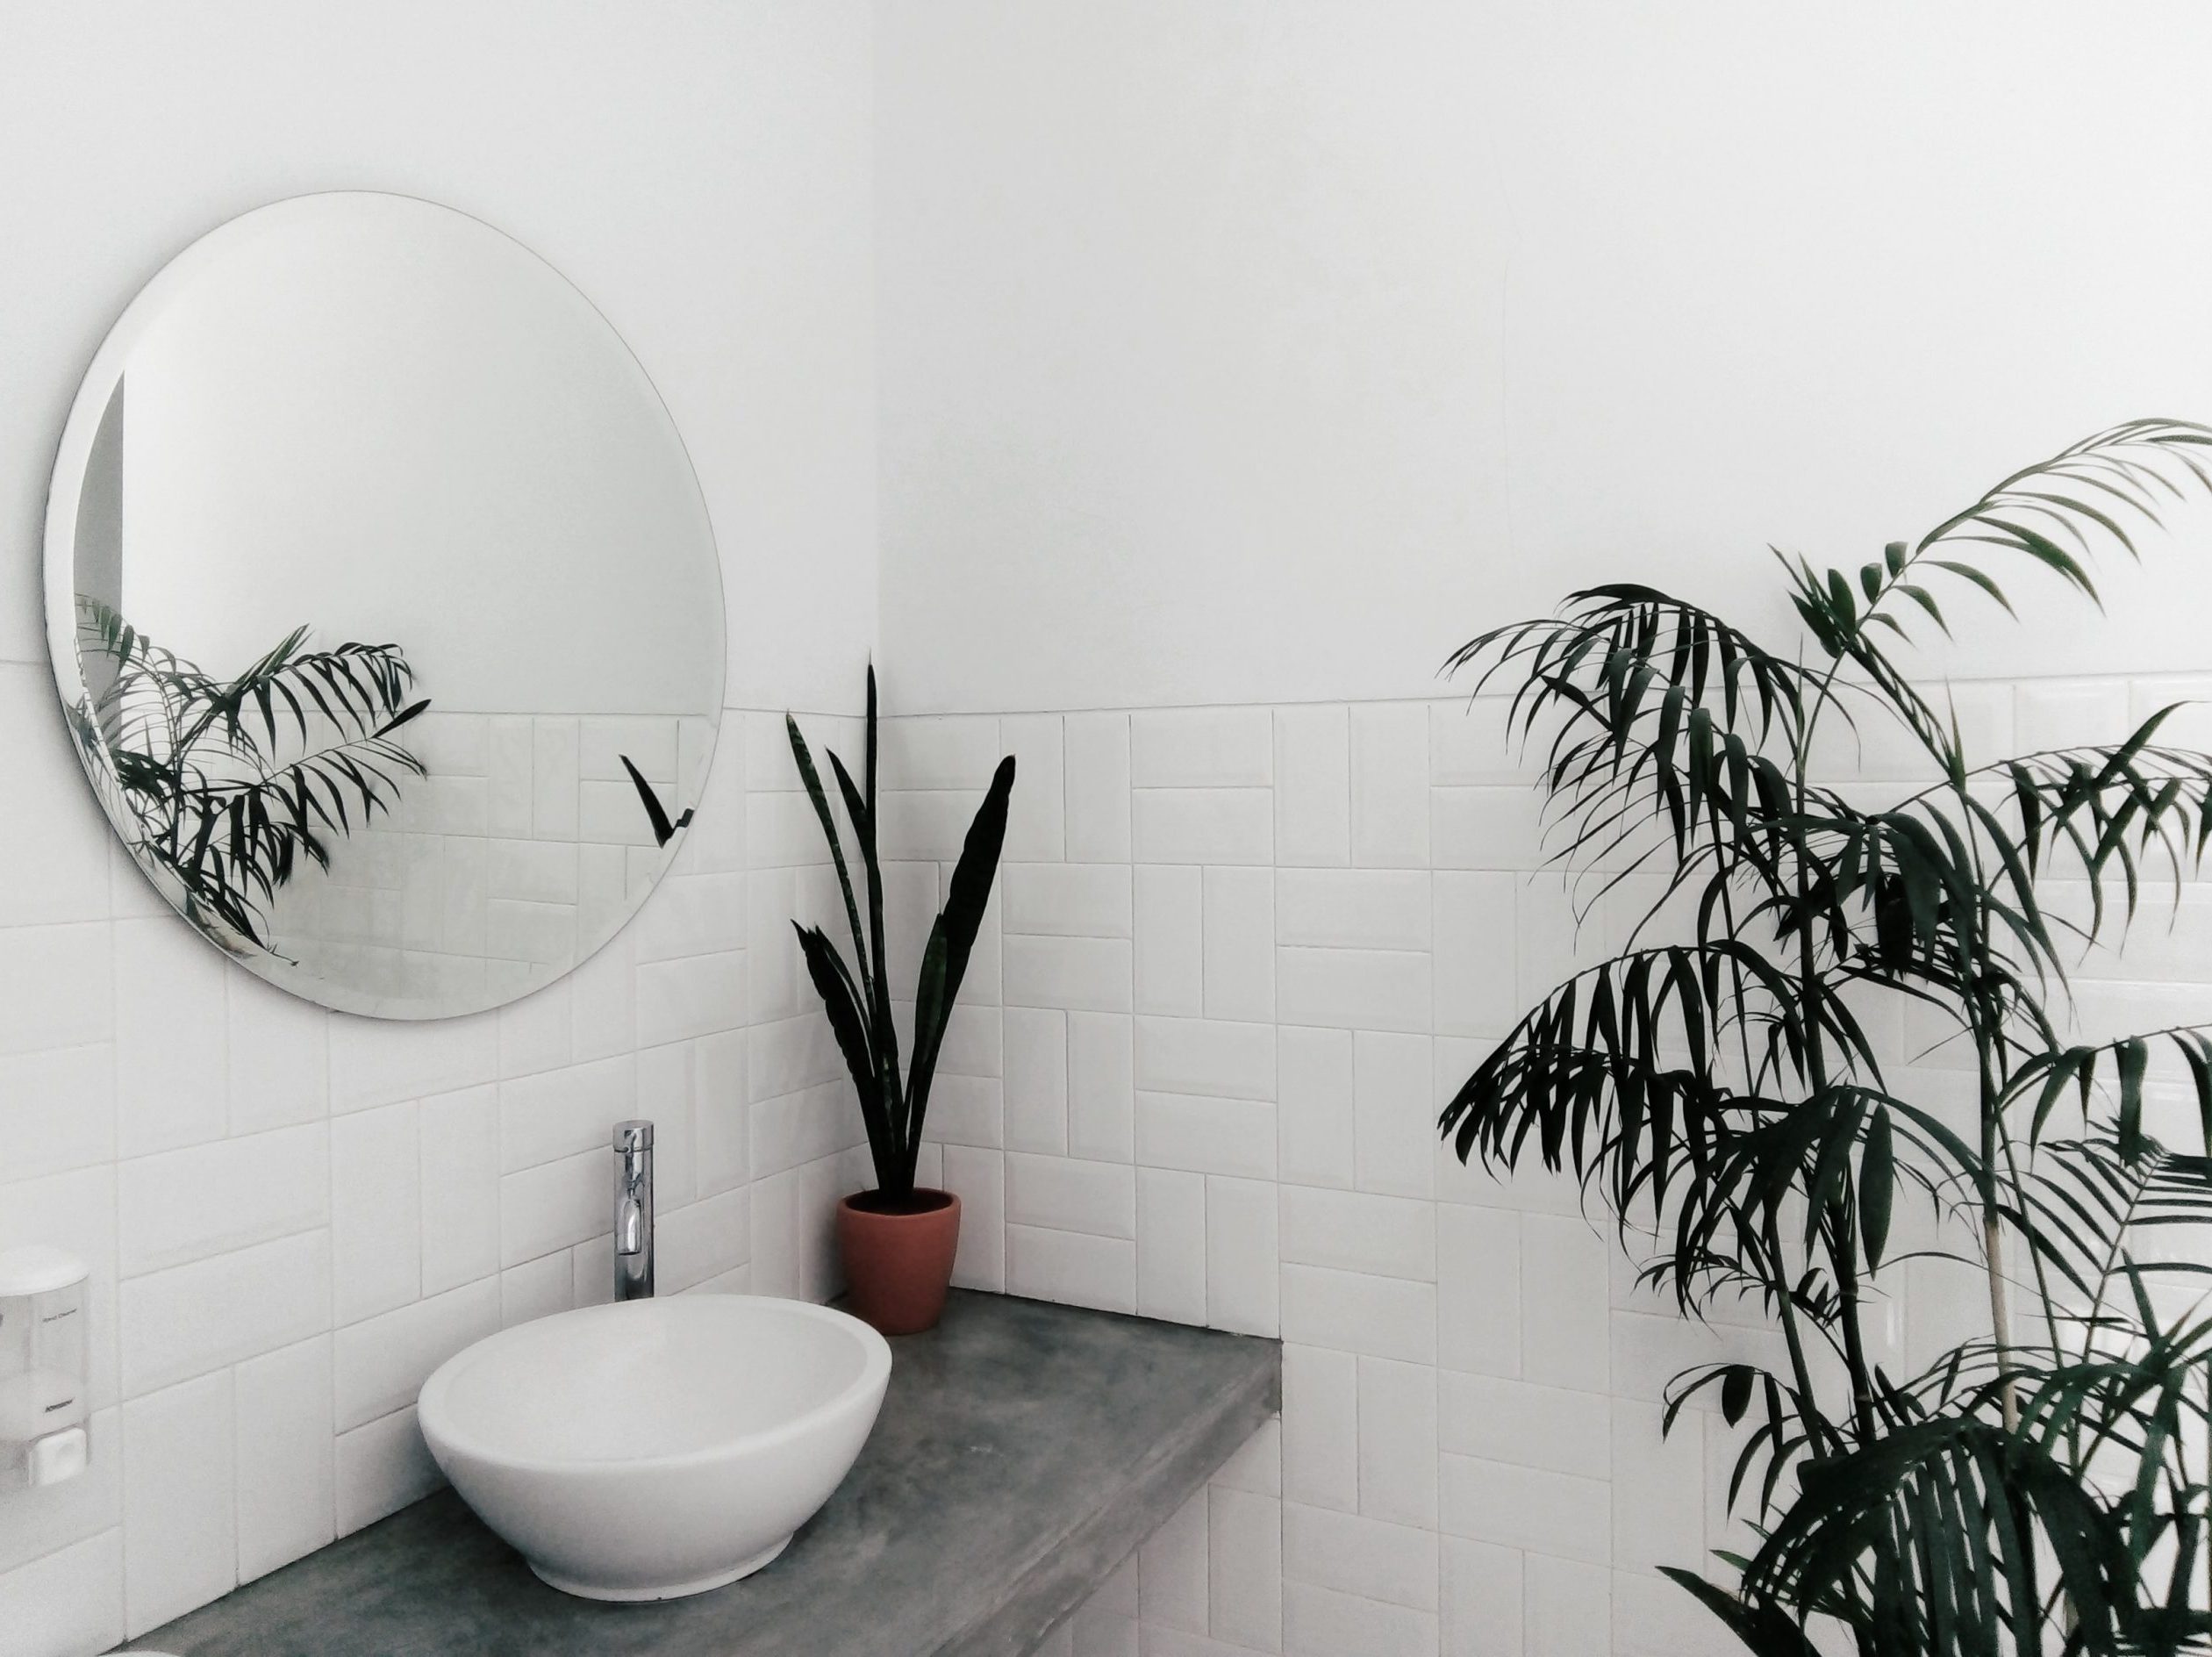 Θέλεις να προσθέσεις λίγο πράσινο στο μπάνιο σου; 5 φυτά εσωτερικού χώρου που αγαπούν την υγρασία